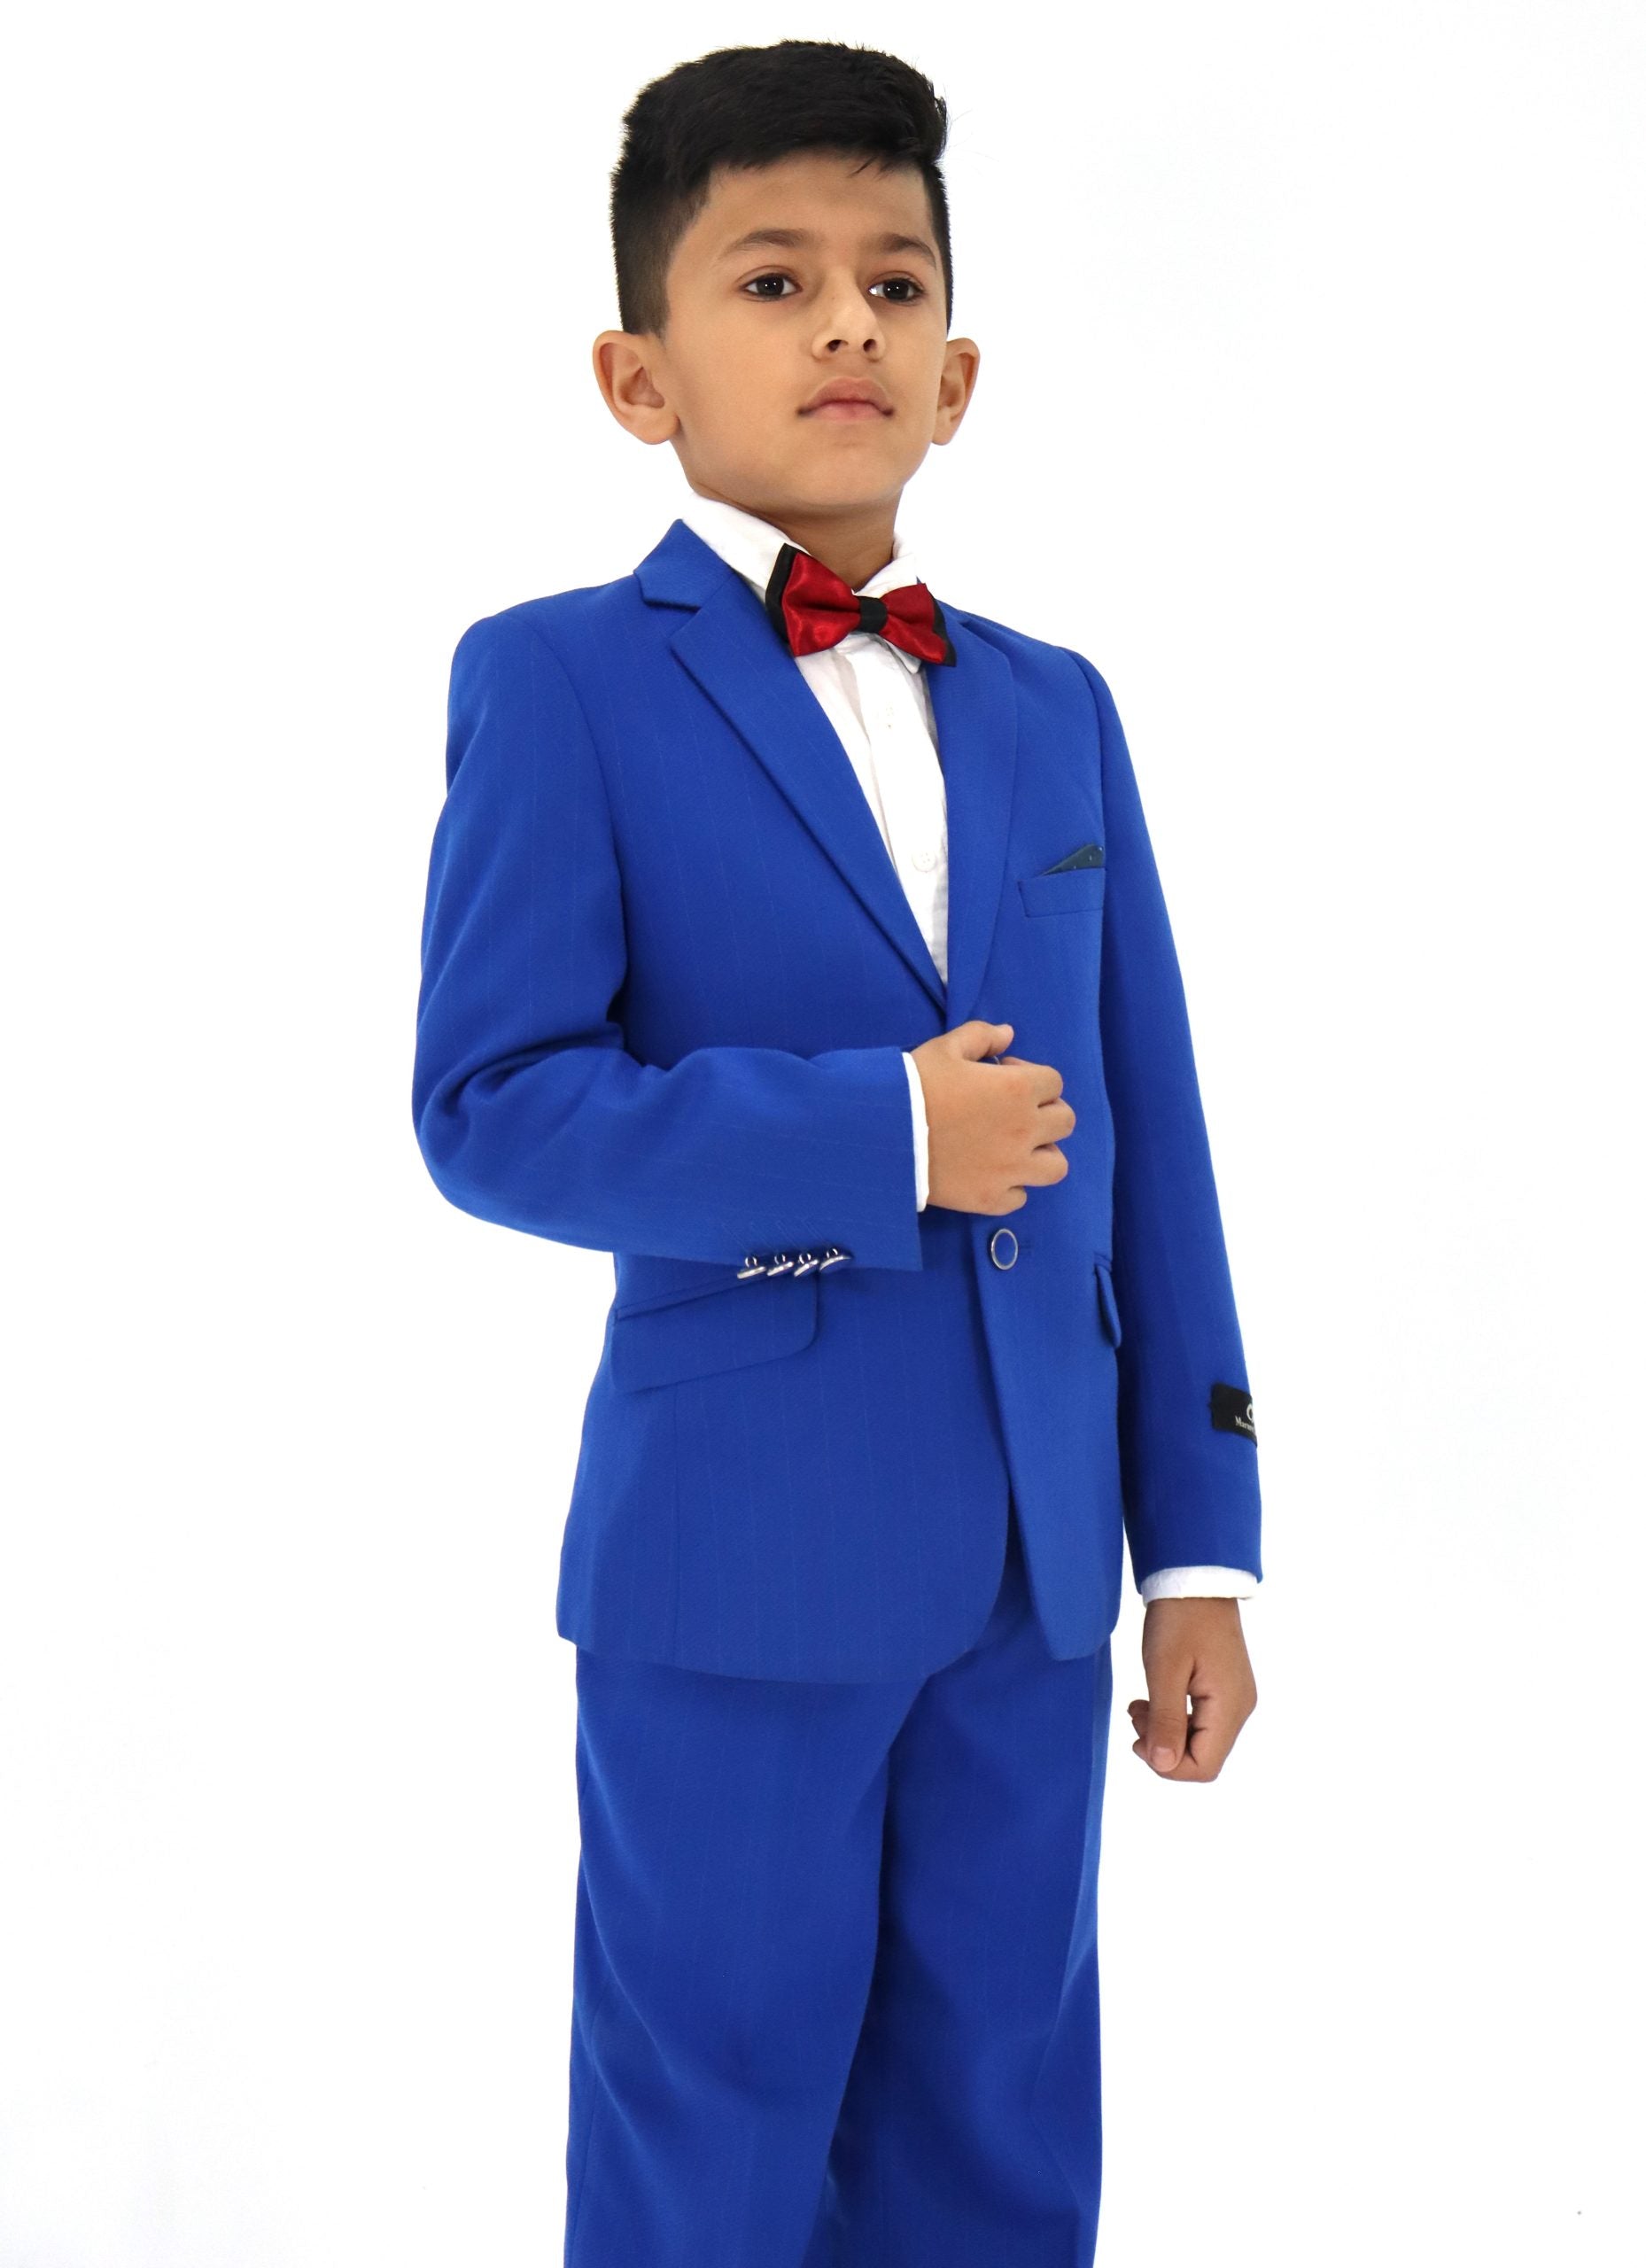 Boys Slim Fit Blue Textured Suit 2Pc Set